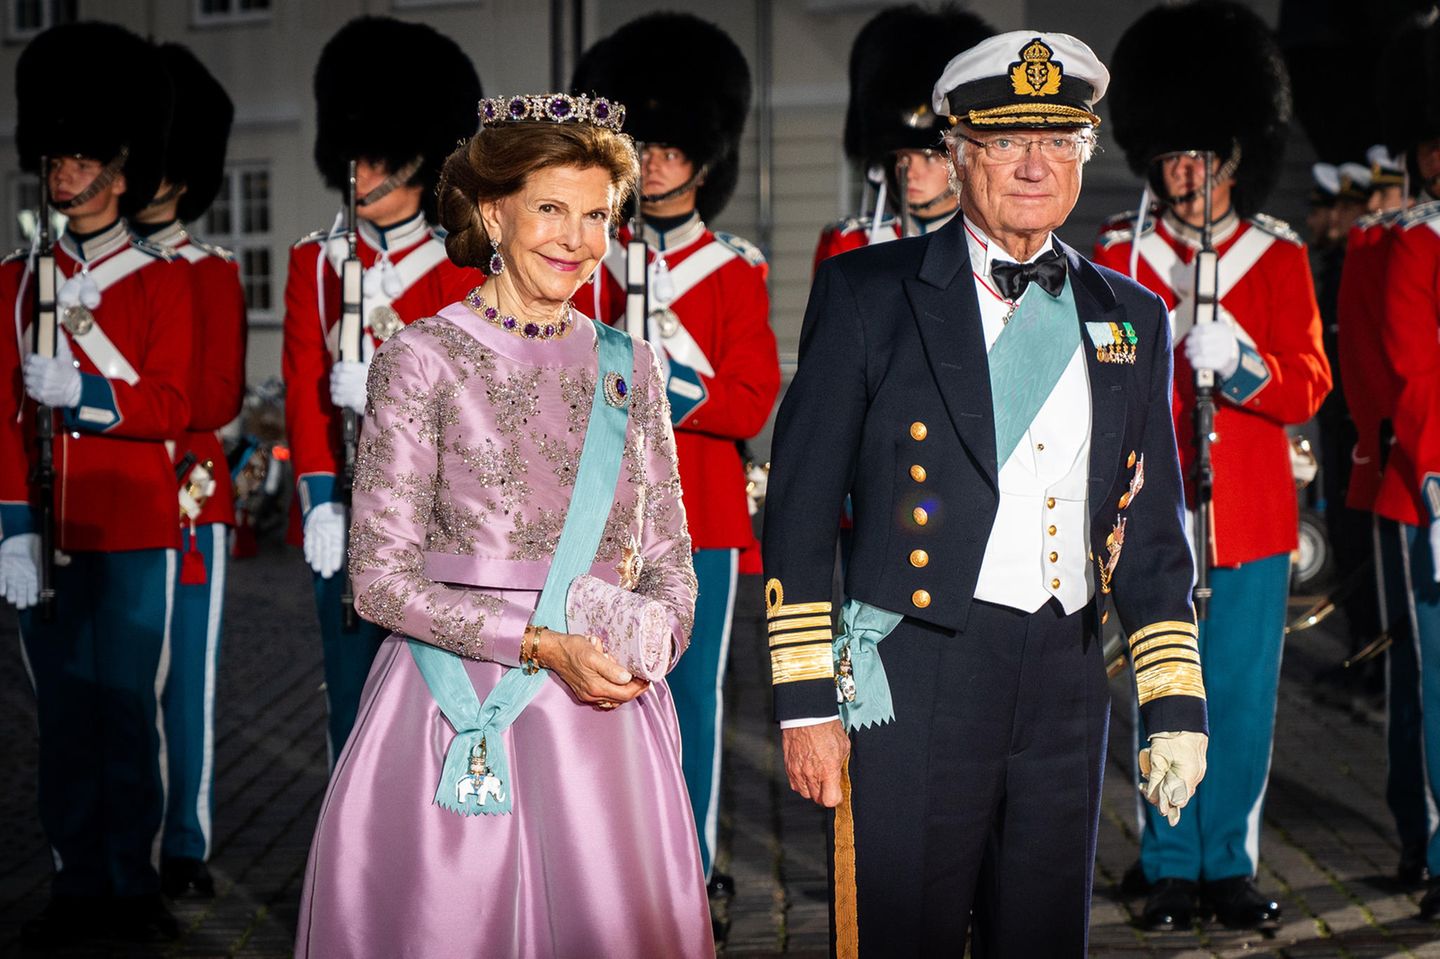 In feierlicher Stimmung zeigen sich auch die royalen Nachbarn Königin Silvia und König Carl Gustaf von Schweden auf dem roten Teppich.